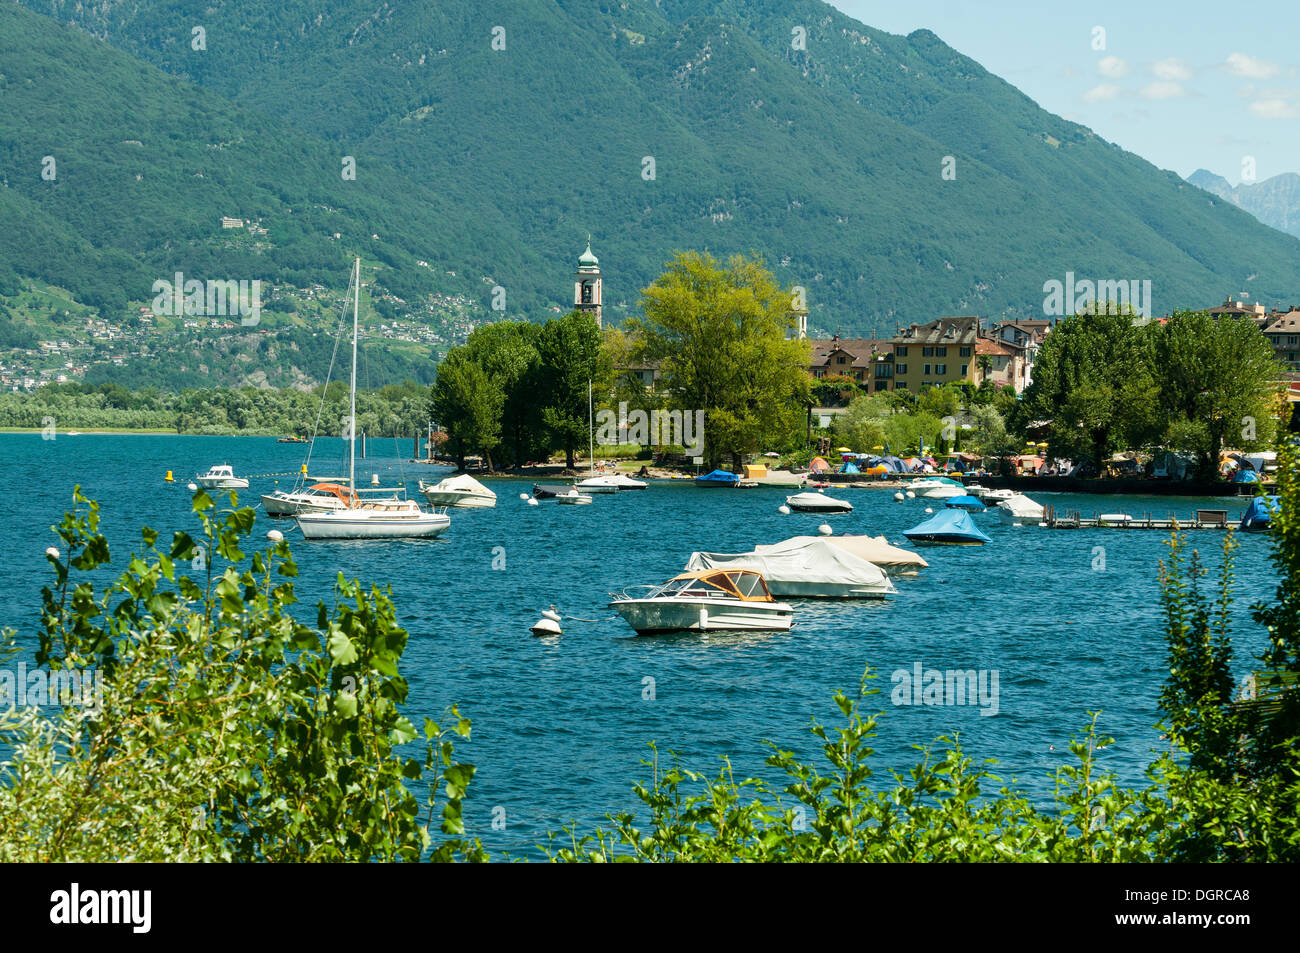 Lake Maggiore at Maccagno, Lombardia, Italy Stock Photo